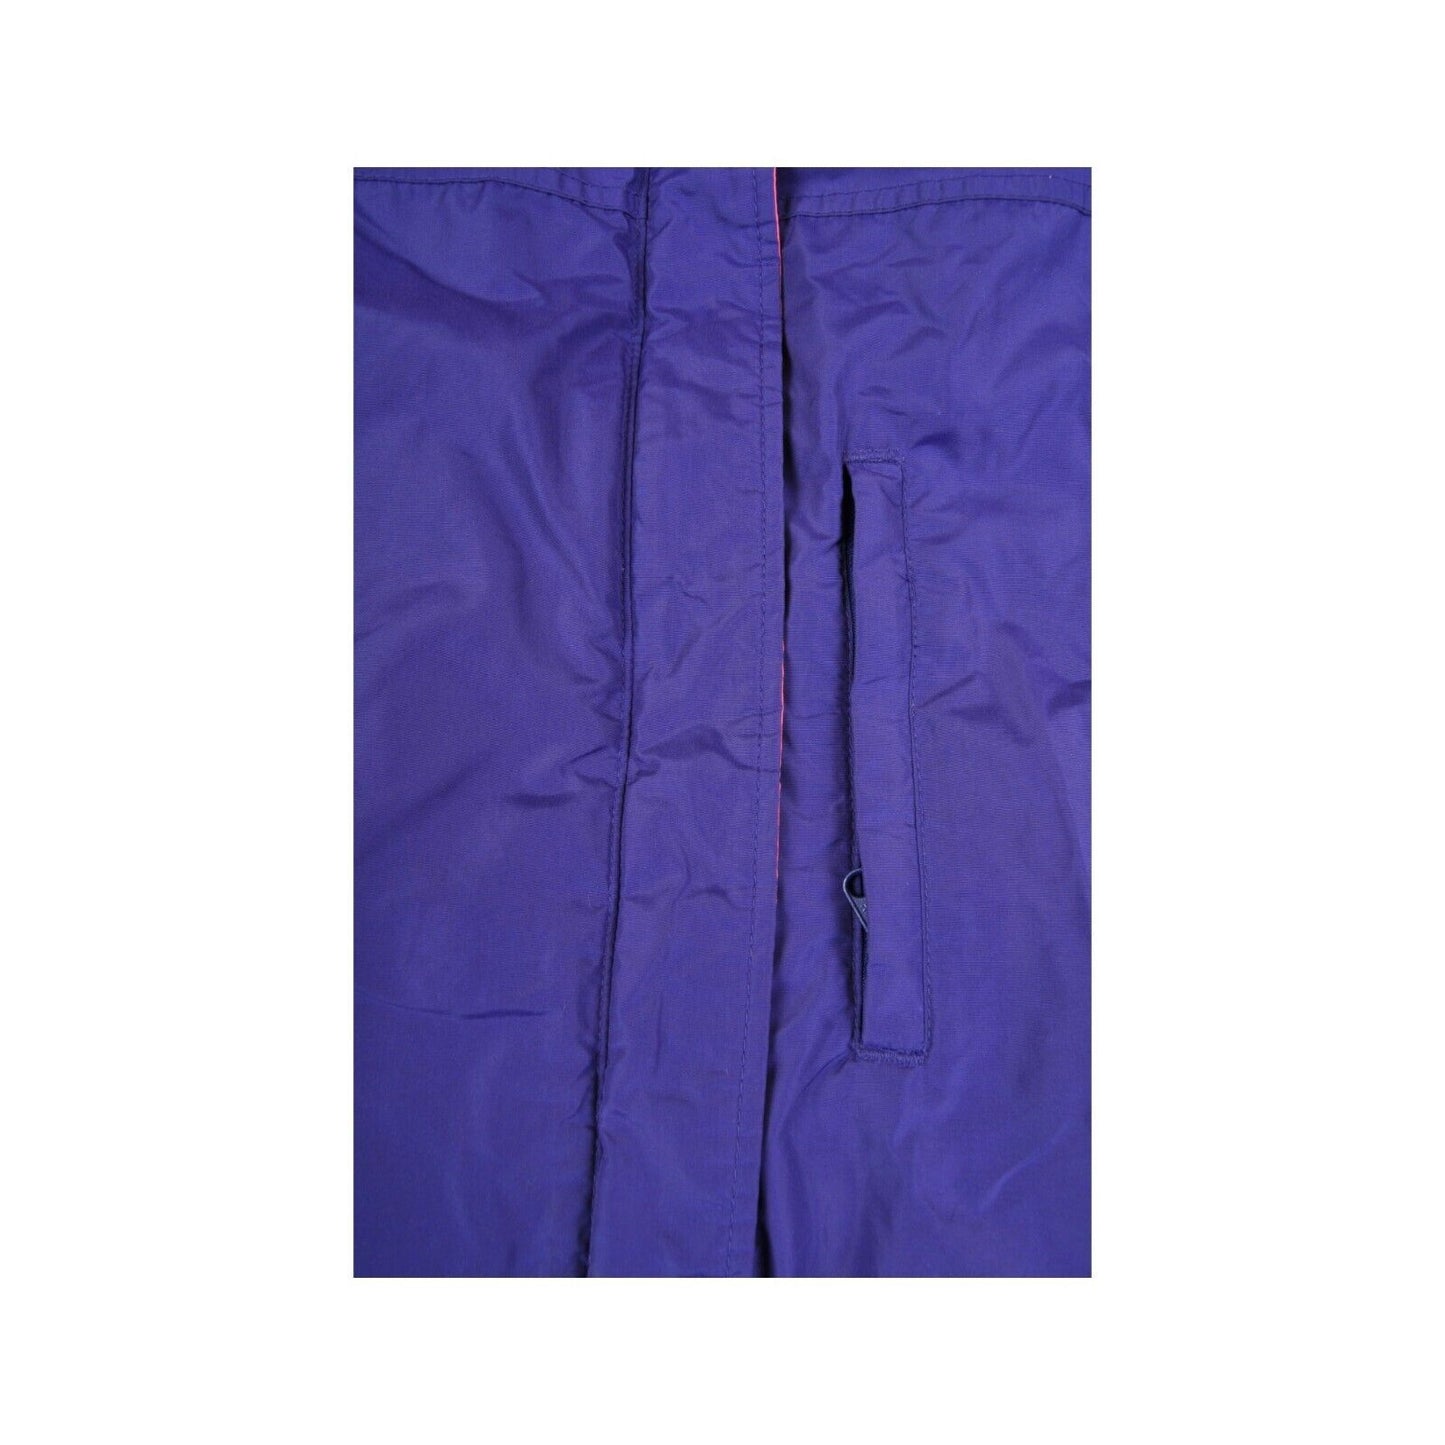 Vintage Columbia Jacket Waterproof Purple/Pink Ladies Medium